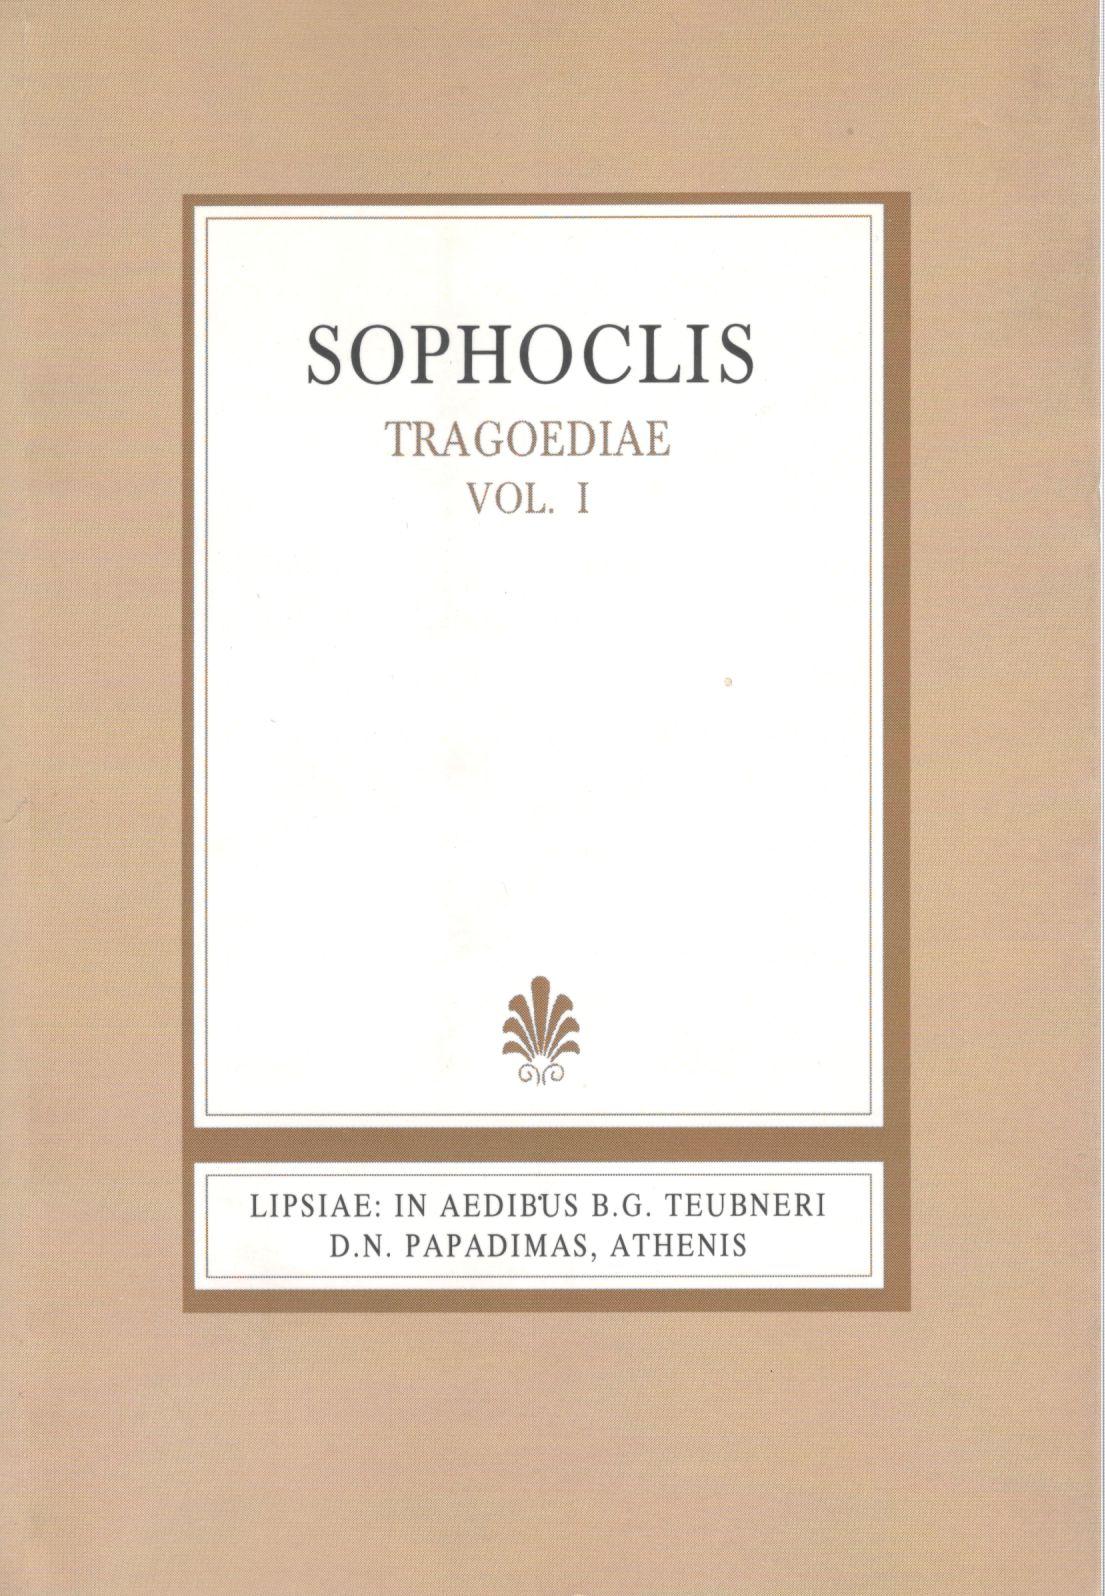 Sophoclis, Tragoediae, Vol. I, [Σοφοκλέους, Τραγωδίαι, τ. Α